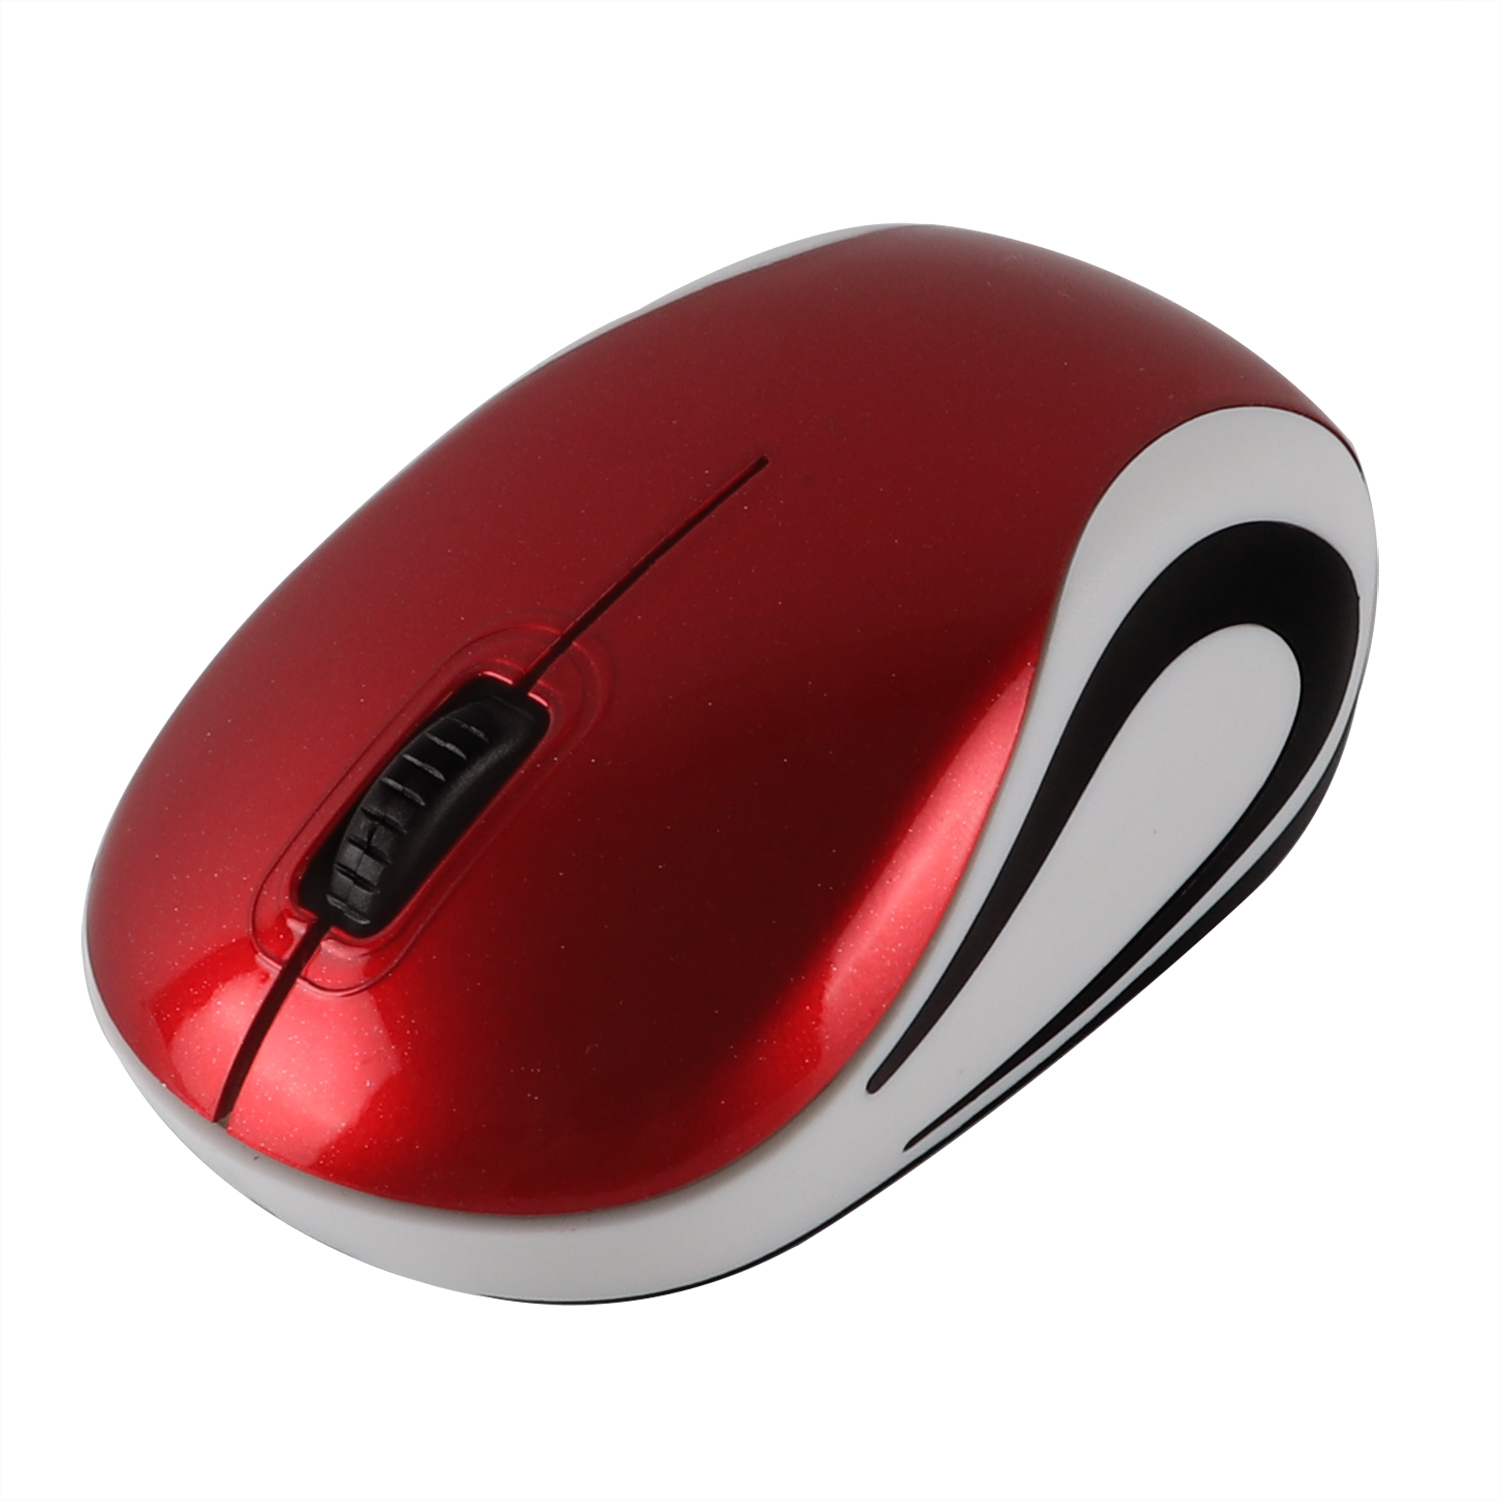 Mini-mouse-wireless-per-computer-2-4Ghz-Gaming-Small-Mause-1600-DPI-ottico-USB-Ergonomico-USB (7)